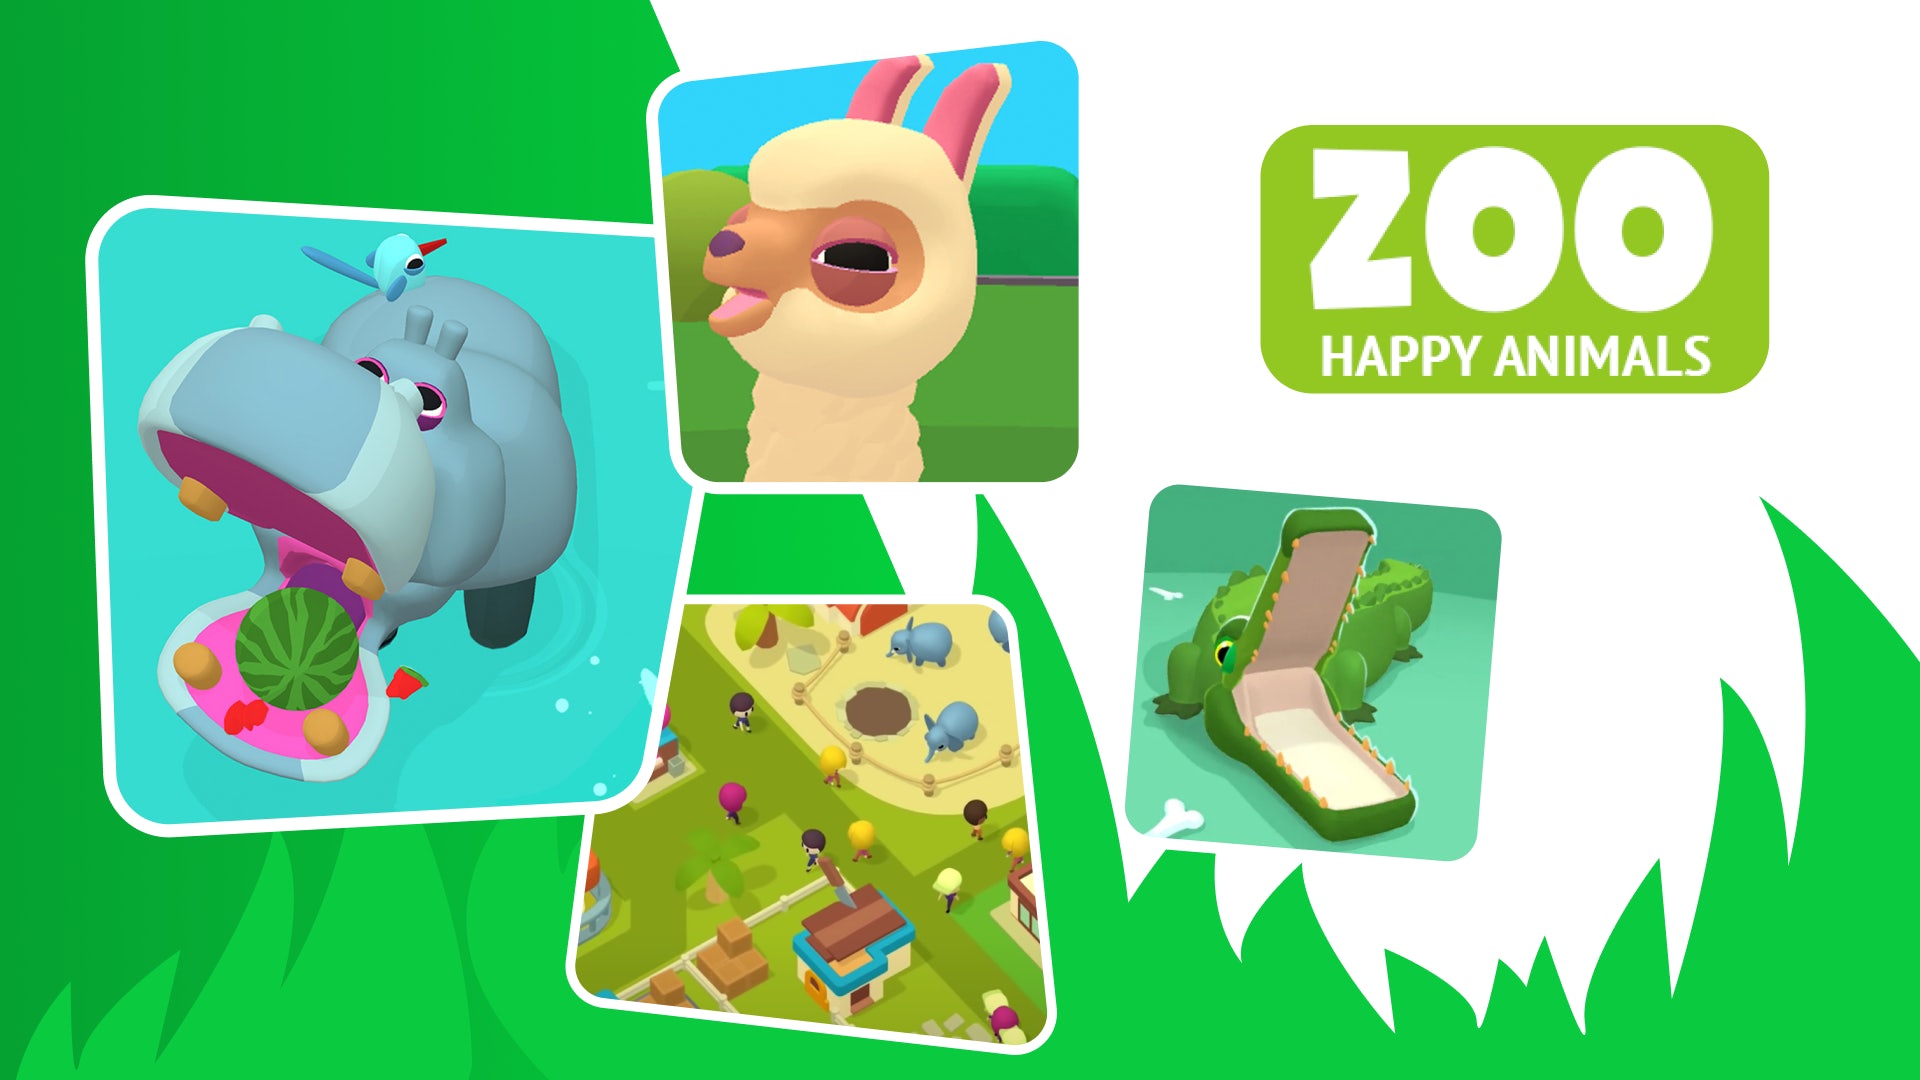 Zoo - Happy Animals